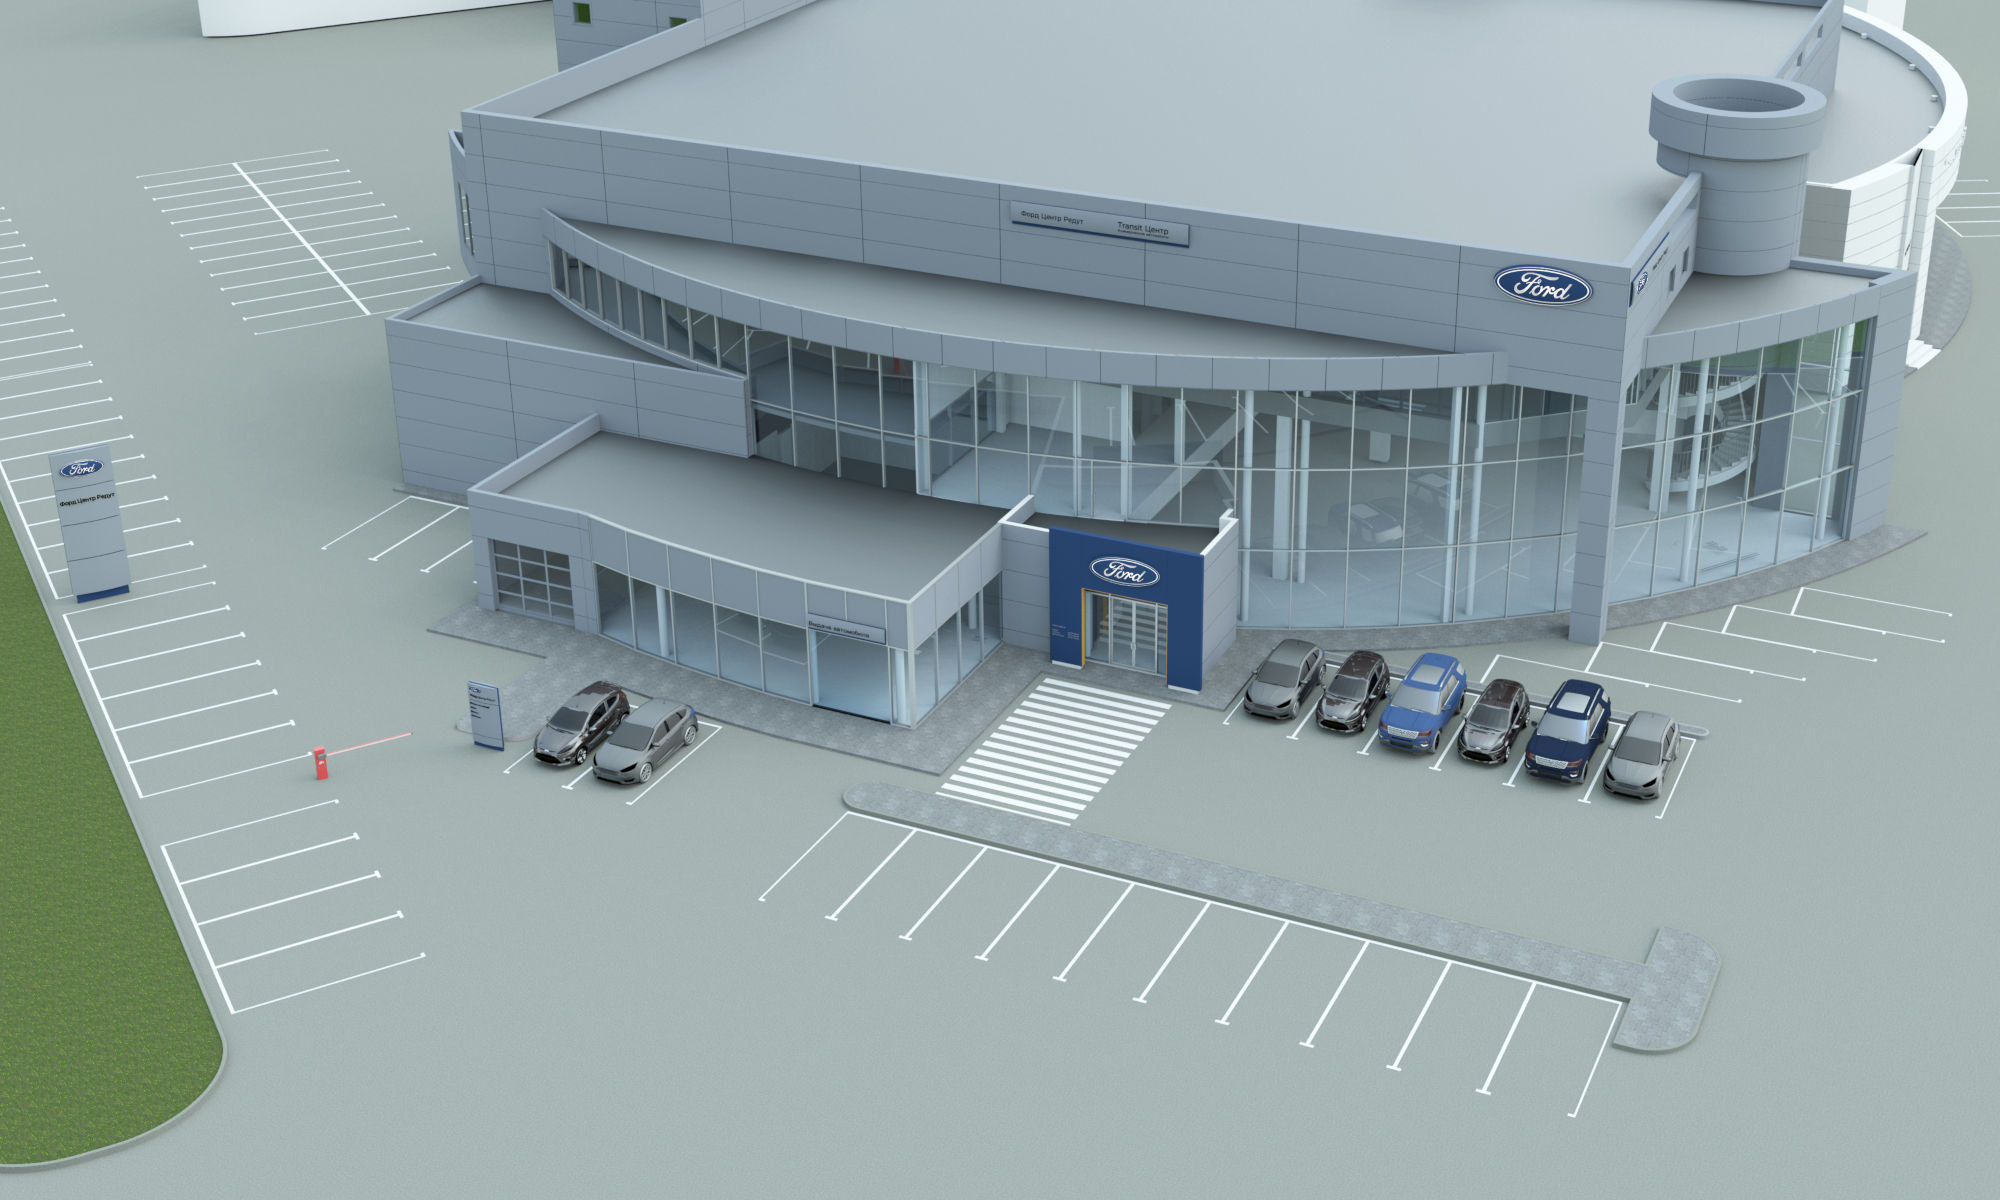 Автосалон Ford. 3D визуализация компании LEON LAB